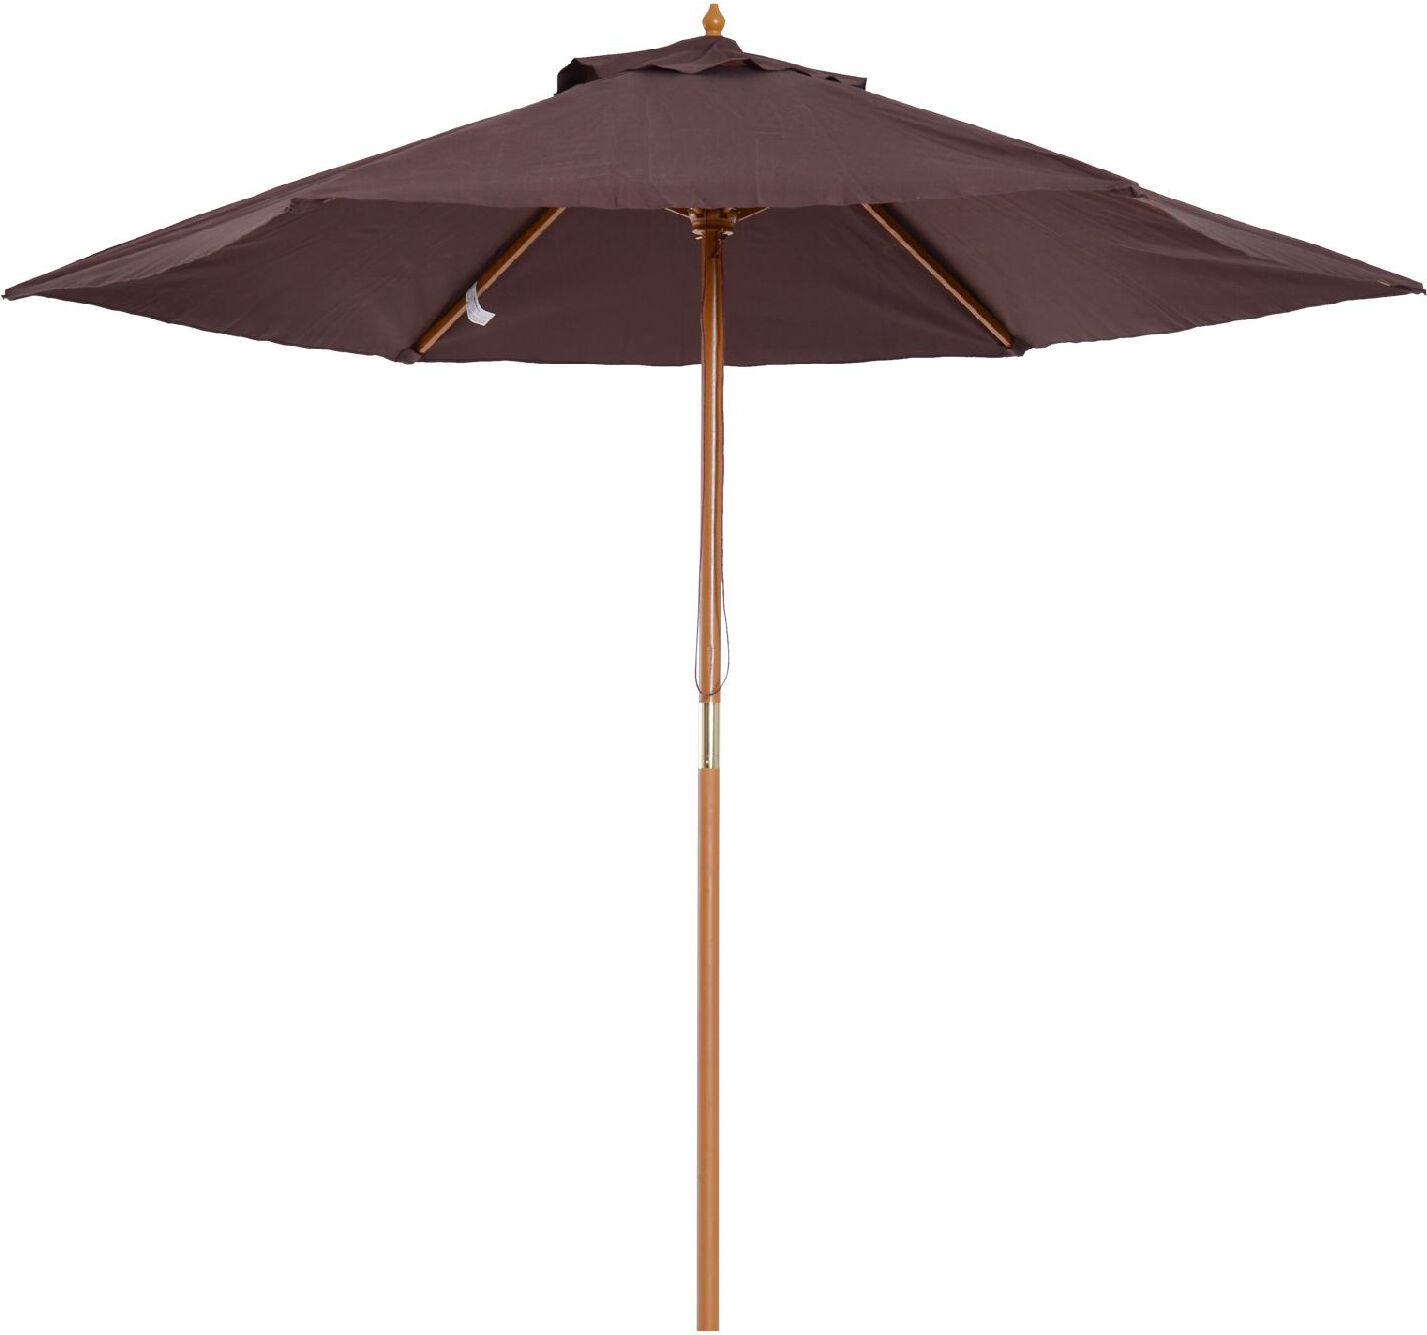 vivagarden 1058d ombrellone da giardino 2.5x2.5 mt in legno telo in poliestere colore marrone - 1058d